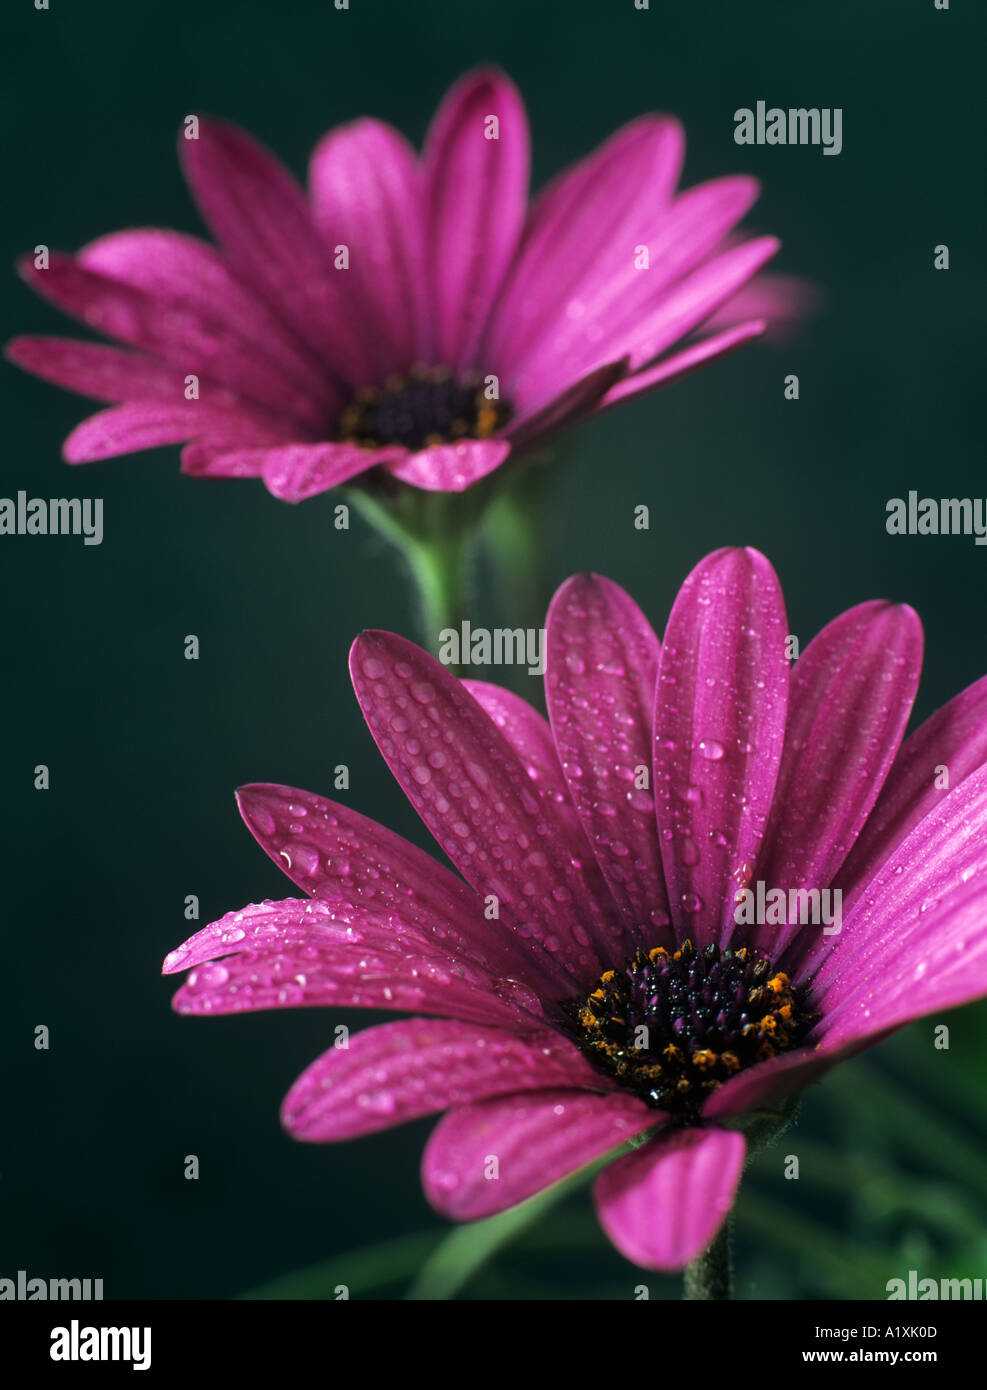 Osteospermum Osoutis viola due fiori con gocce d'acqua contro sfondo verde scuro Foto Stock